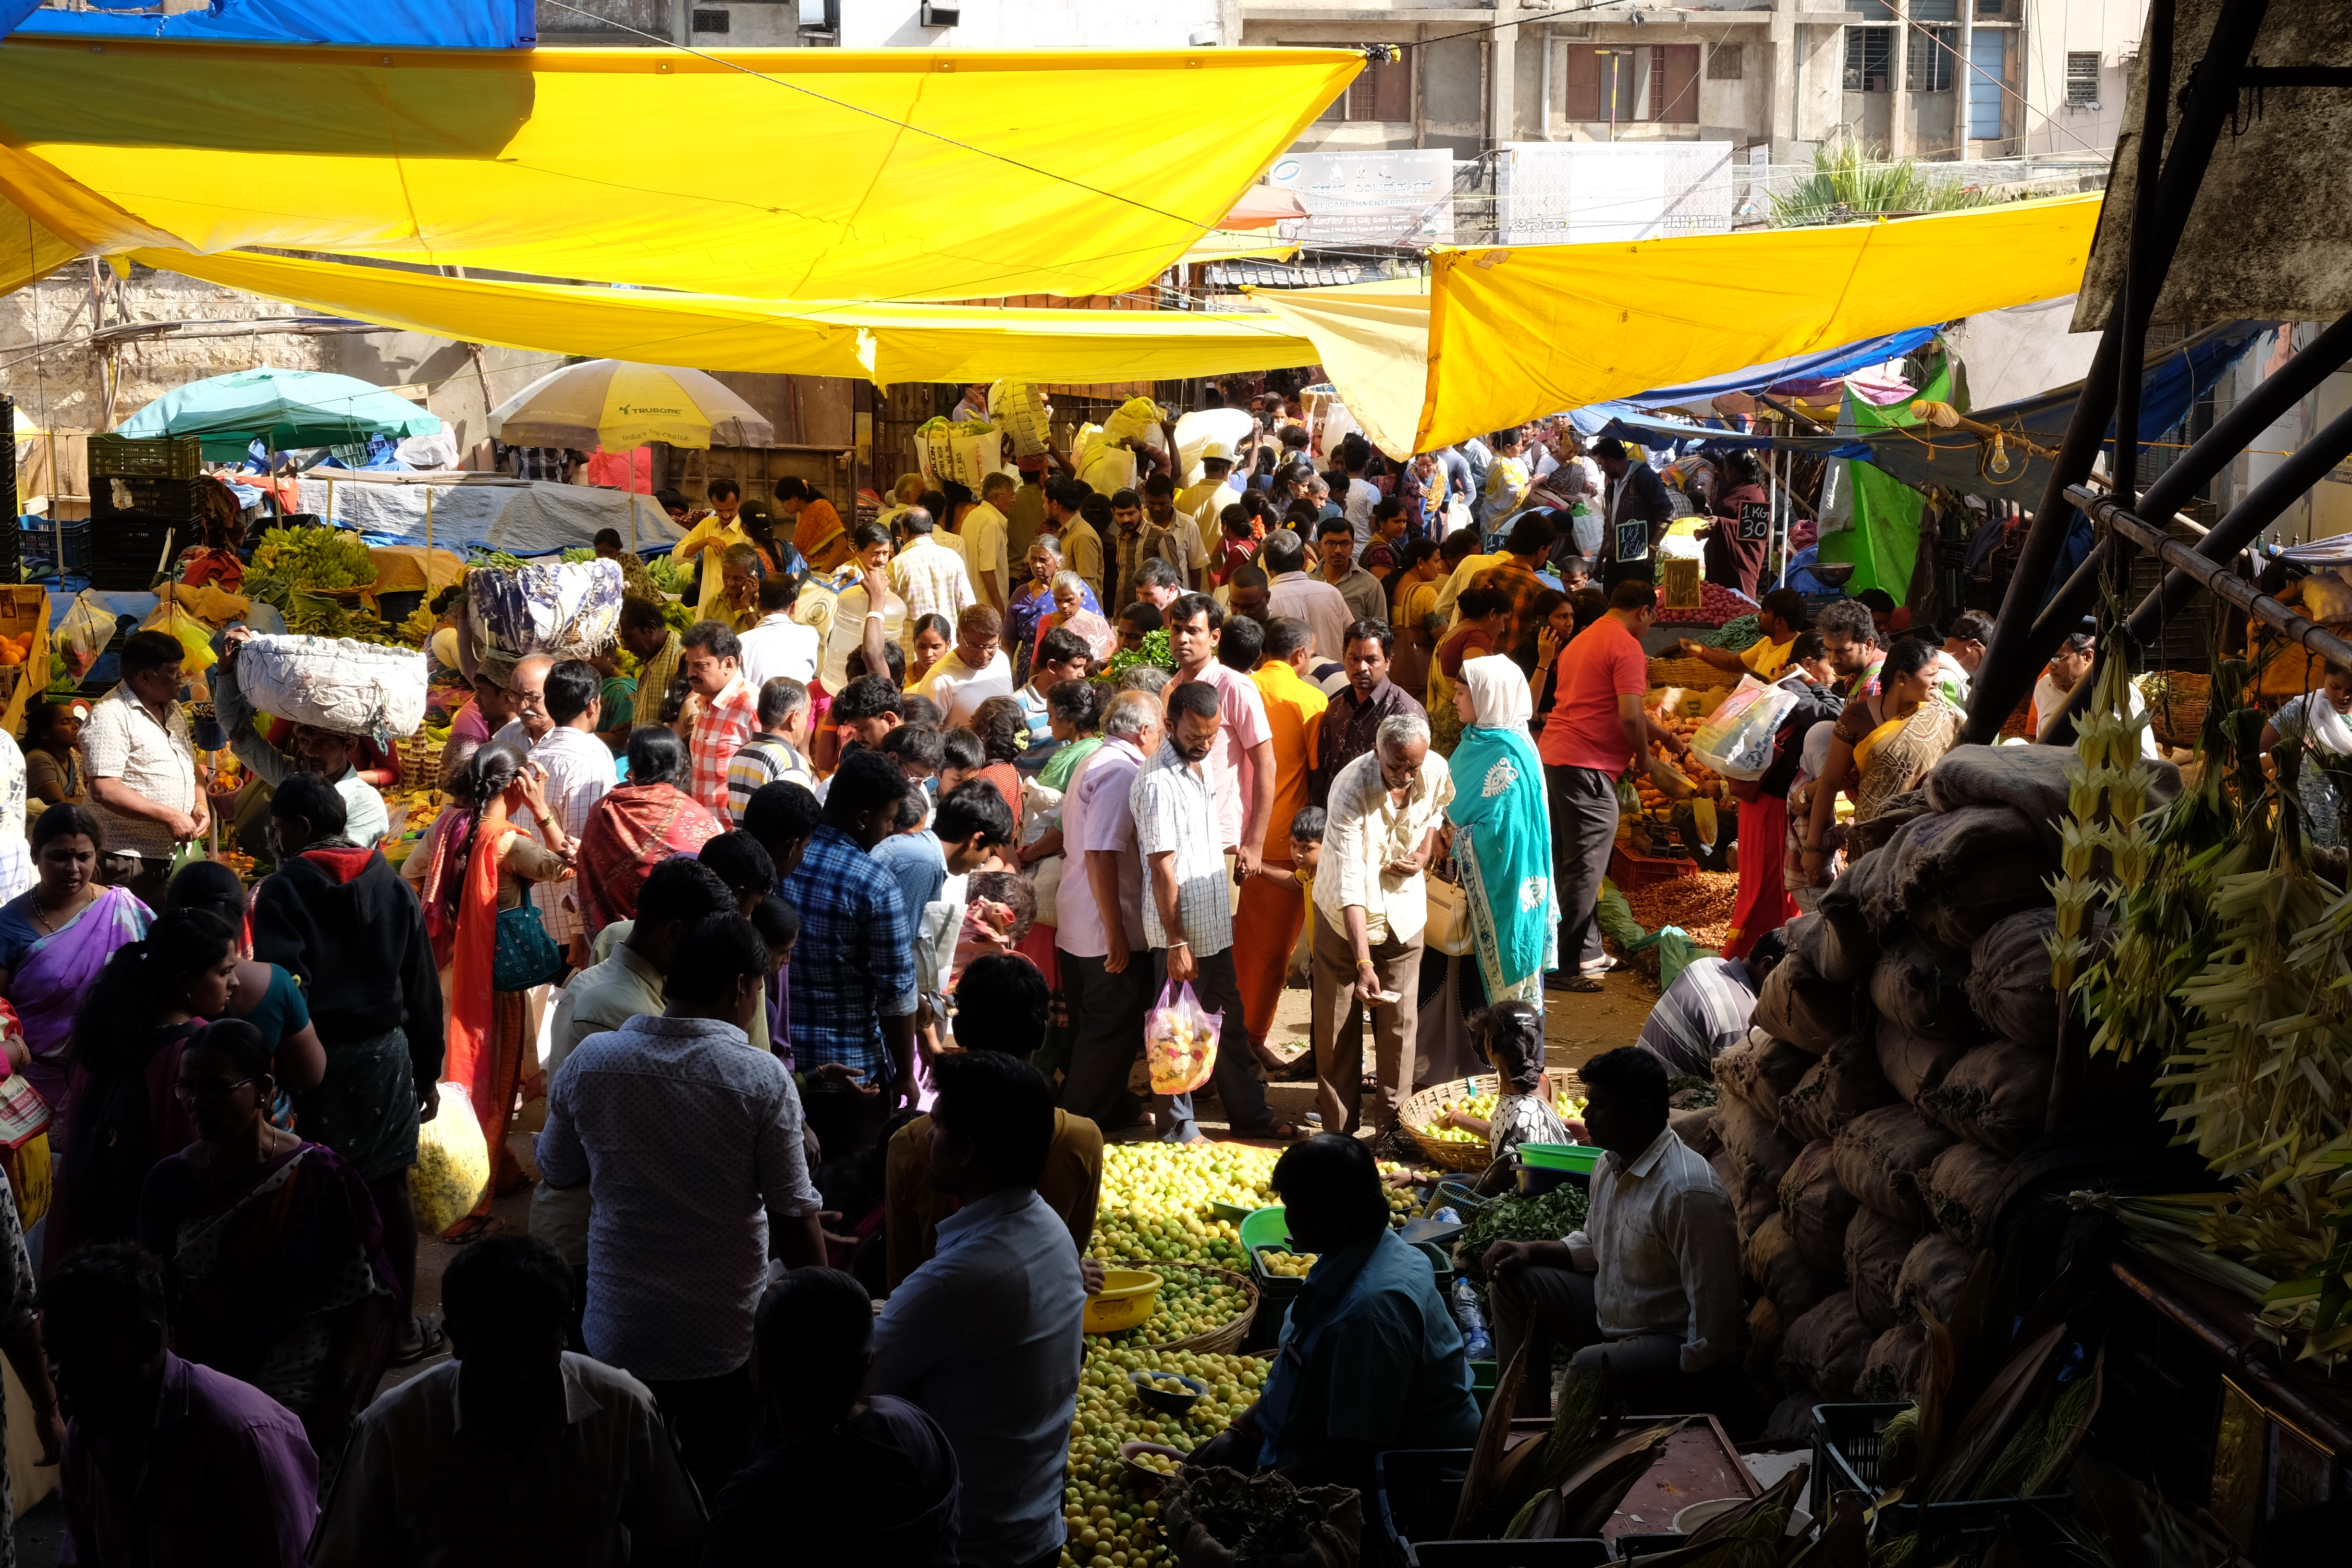 À l'une des entrées du KR Market, un important centre de commerce de Bangalore, qui est notamment connu comme l'un des plus grands marchés de fleurs de l'Asie.